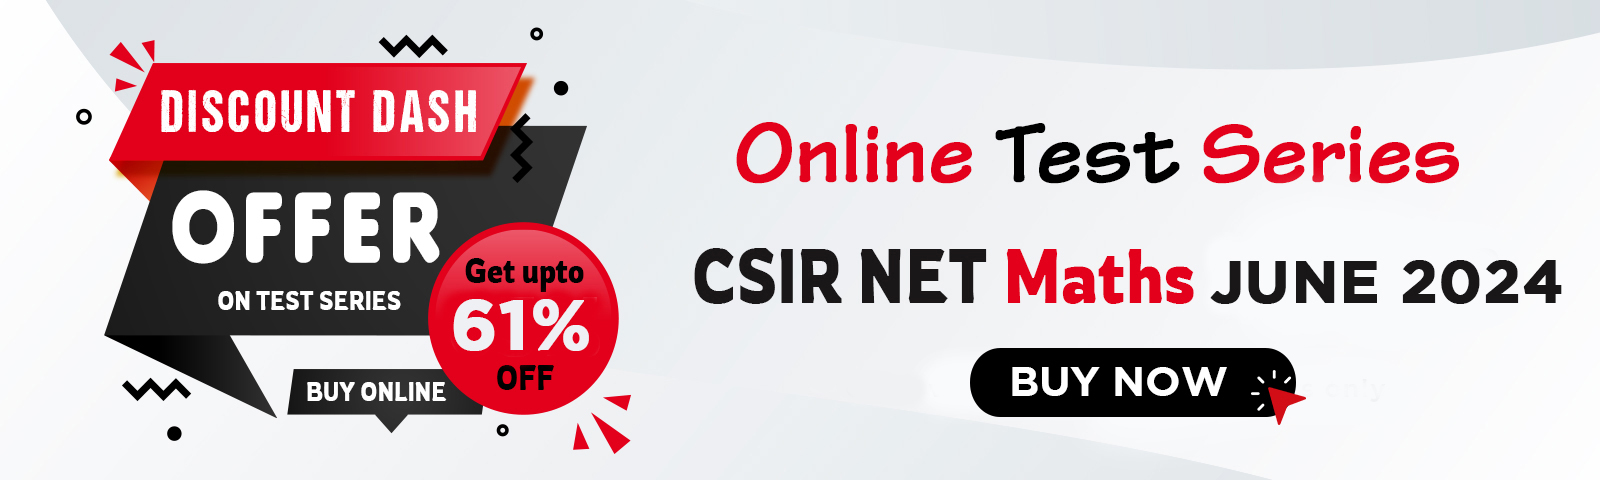 CSIR NET